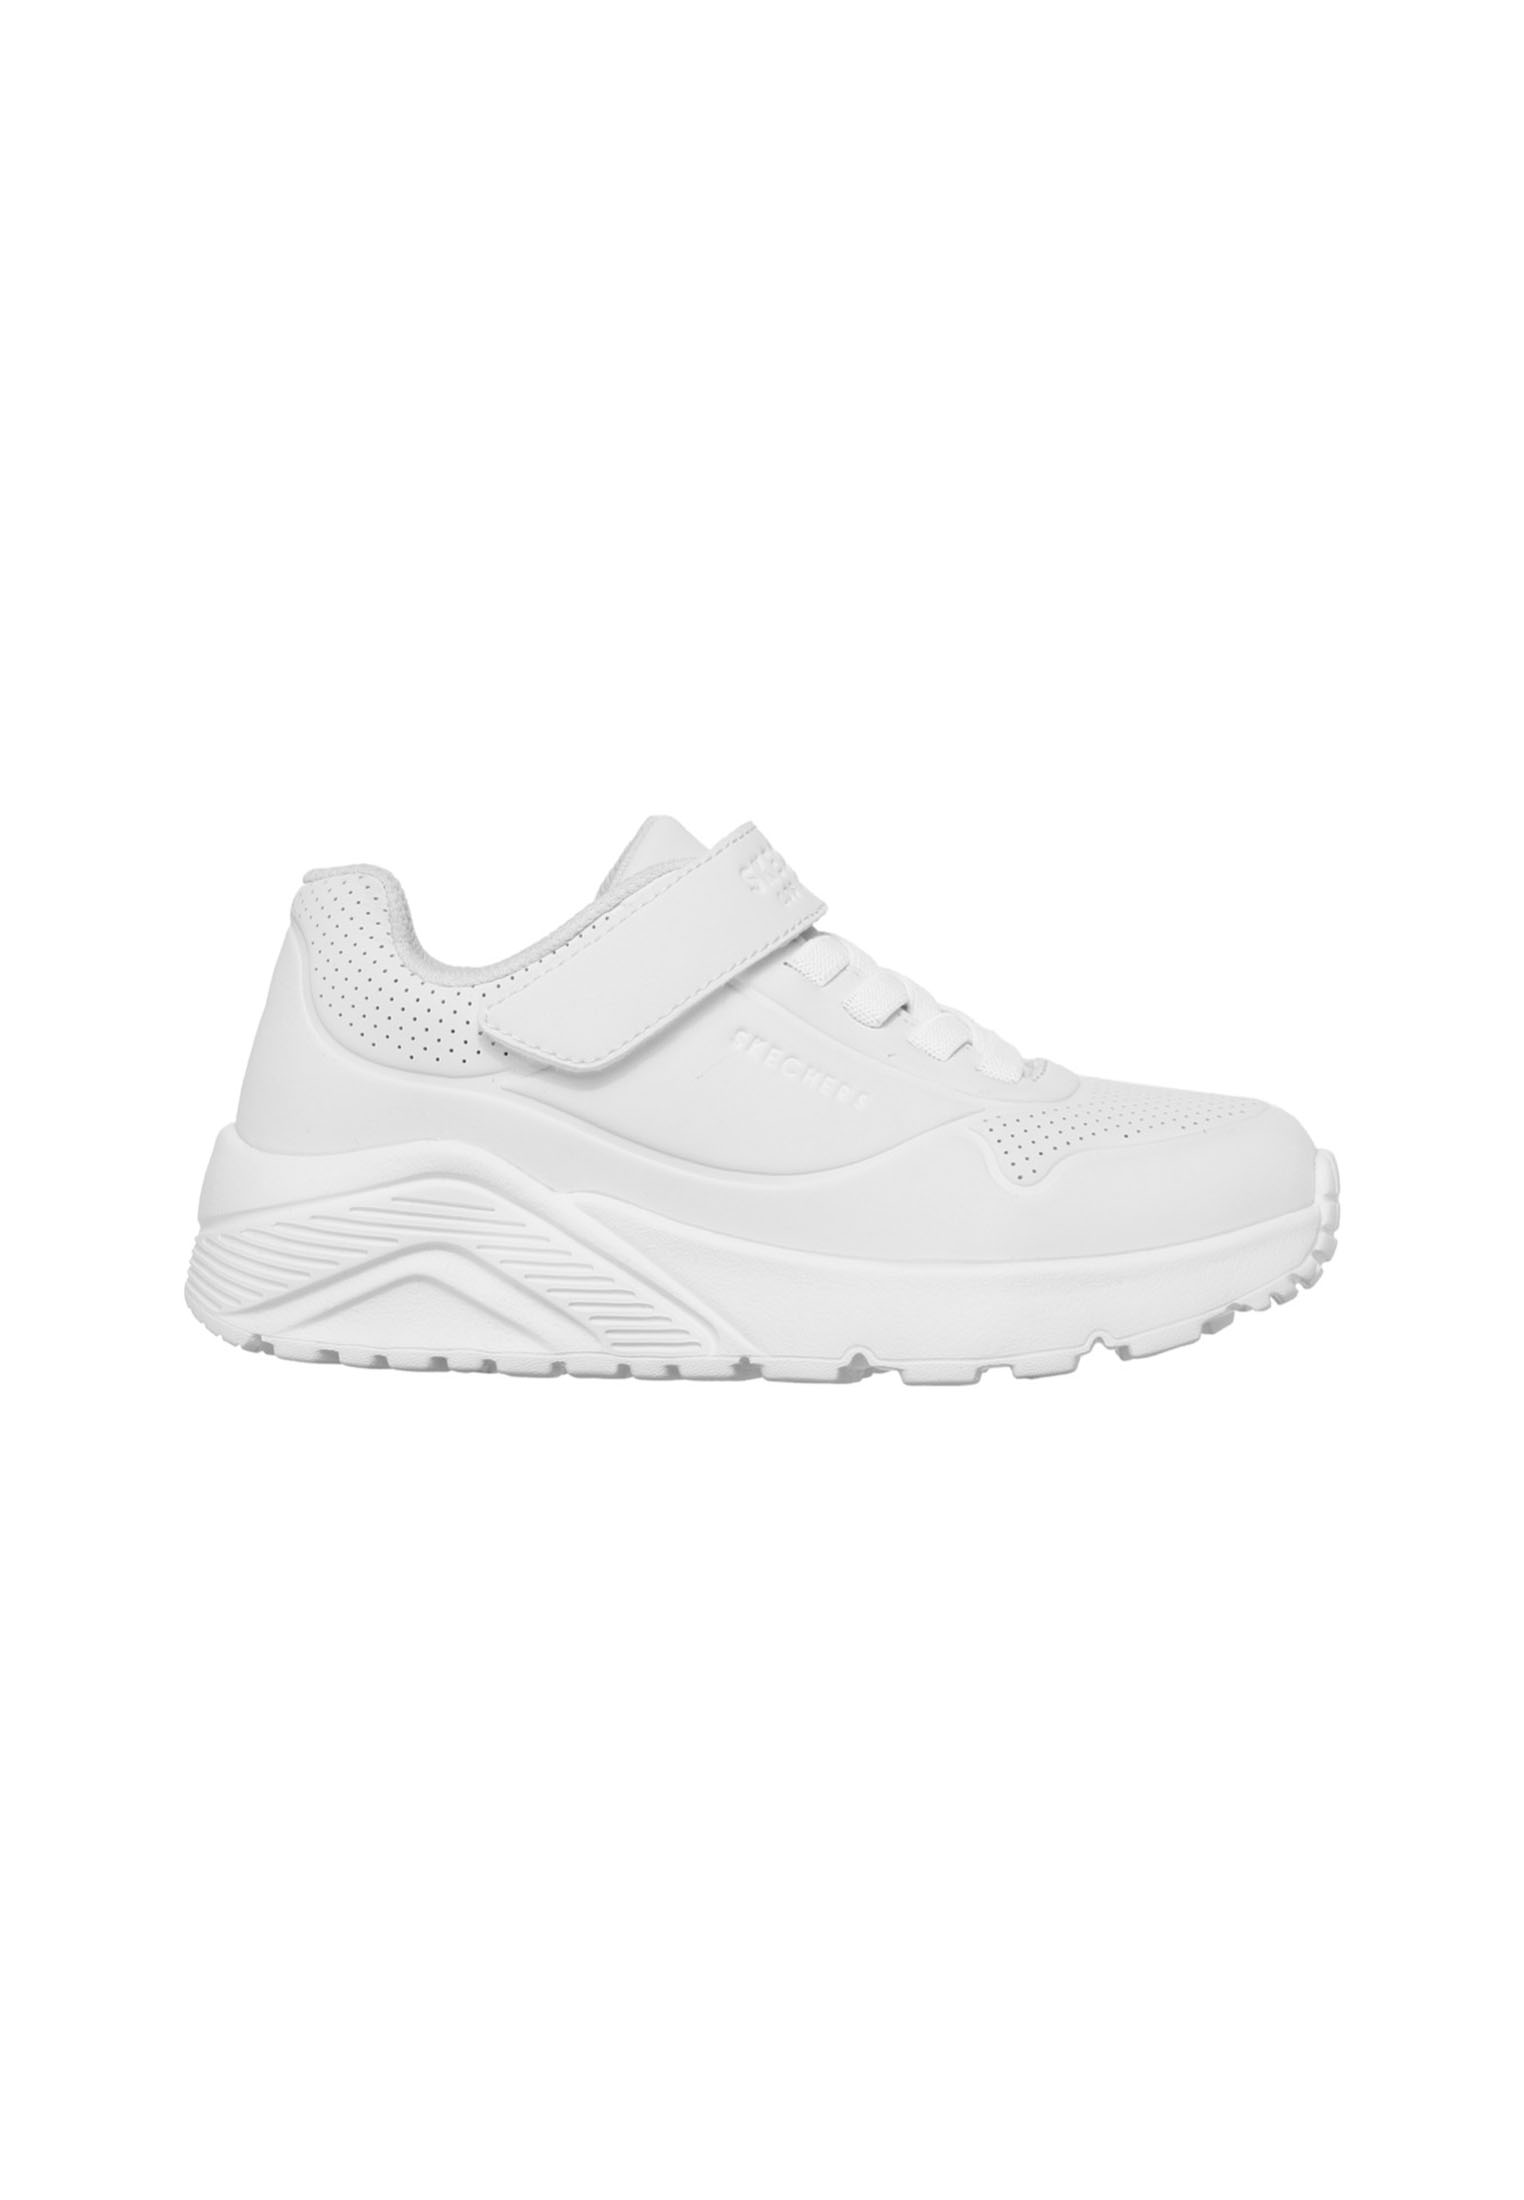 Skechers Uno Lite kinder sneakers - Wit - Maat 33 - Extra comfort - Memory Foam